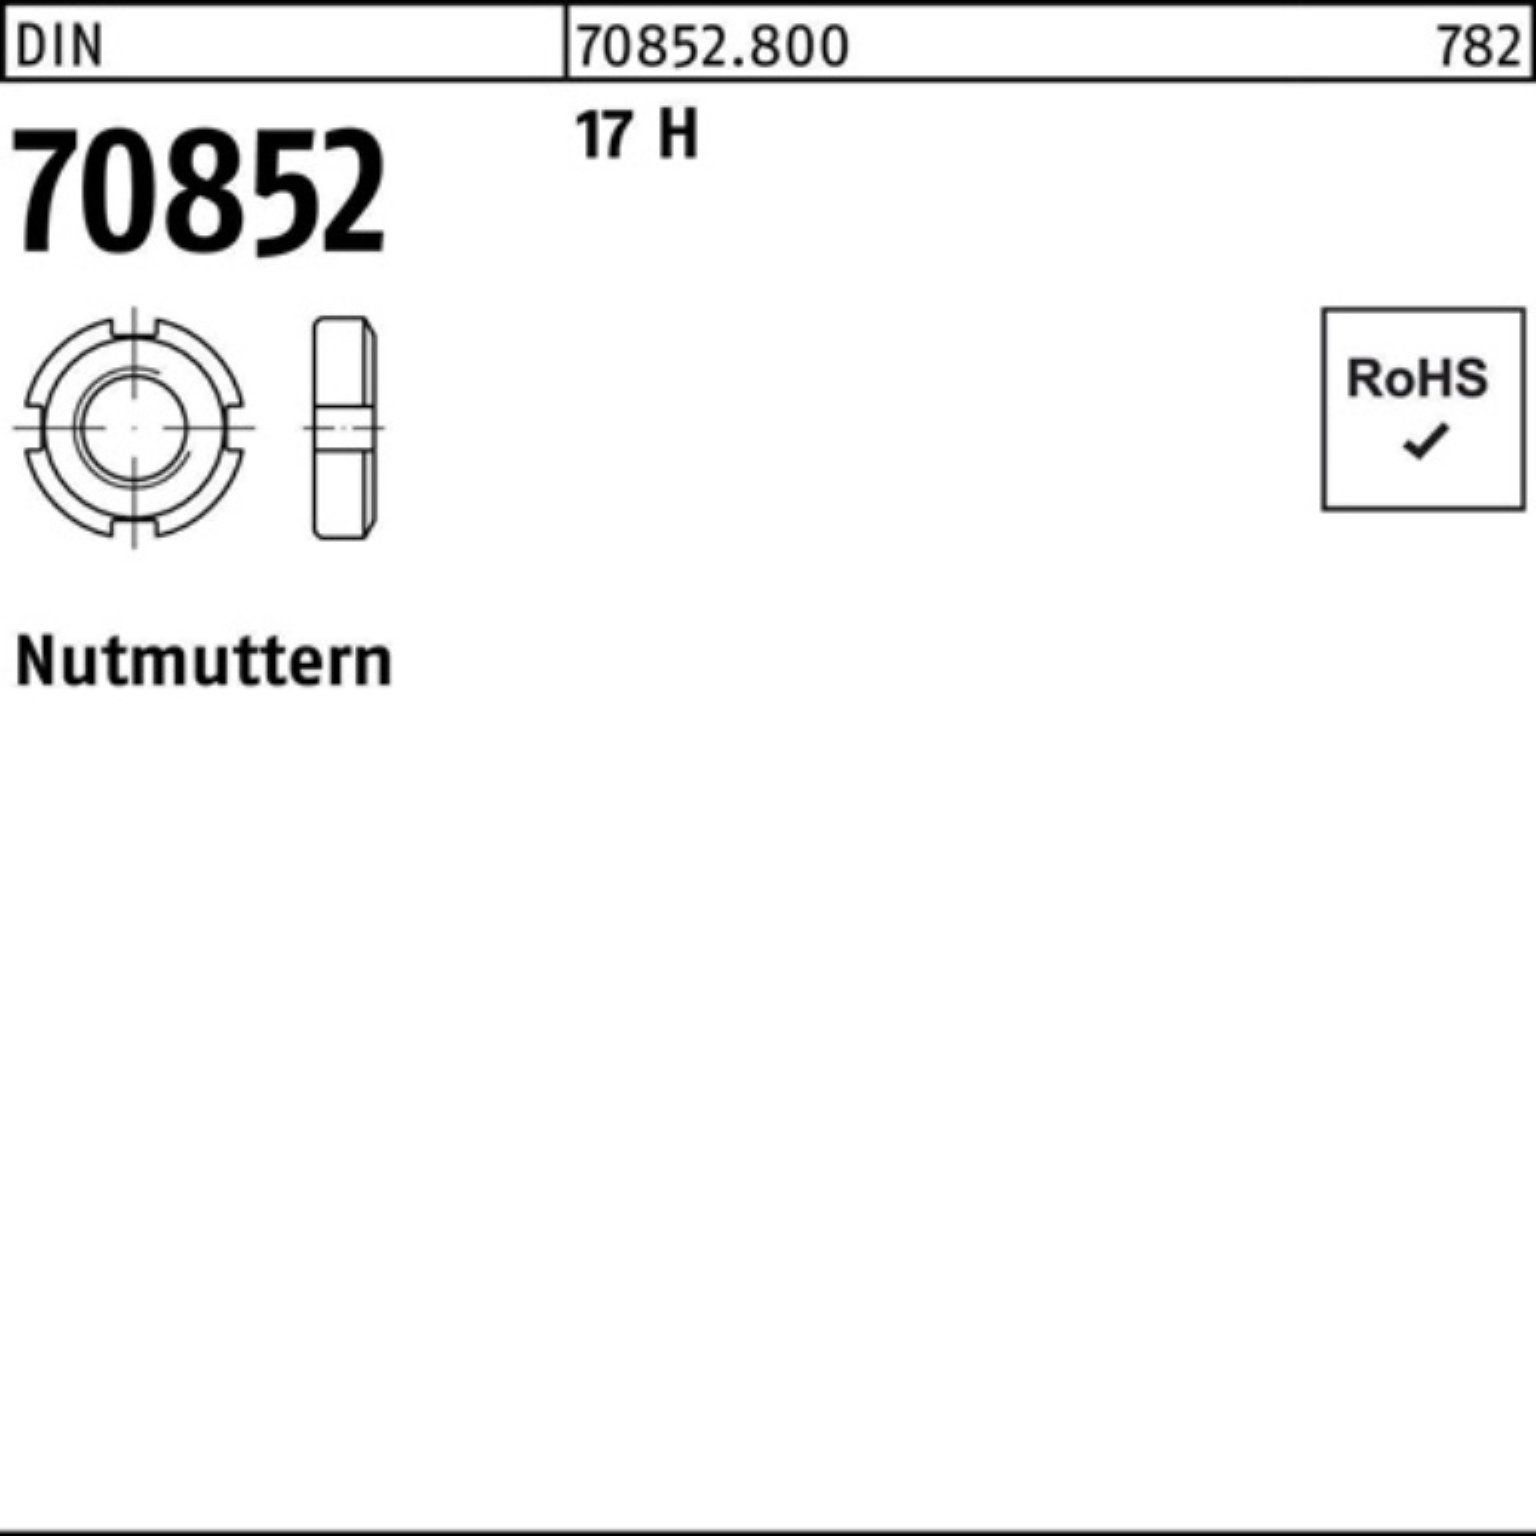 Reyher Nutmutter 100er Pack Nutmutter DIN 70852 M40x 1,5 17 H 1 Stück DIN 70852 17 H N